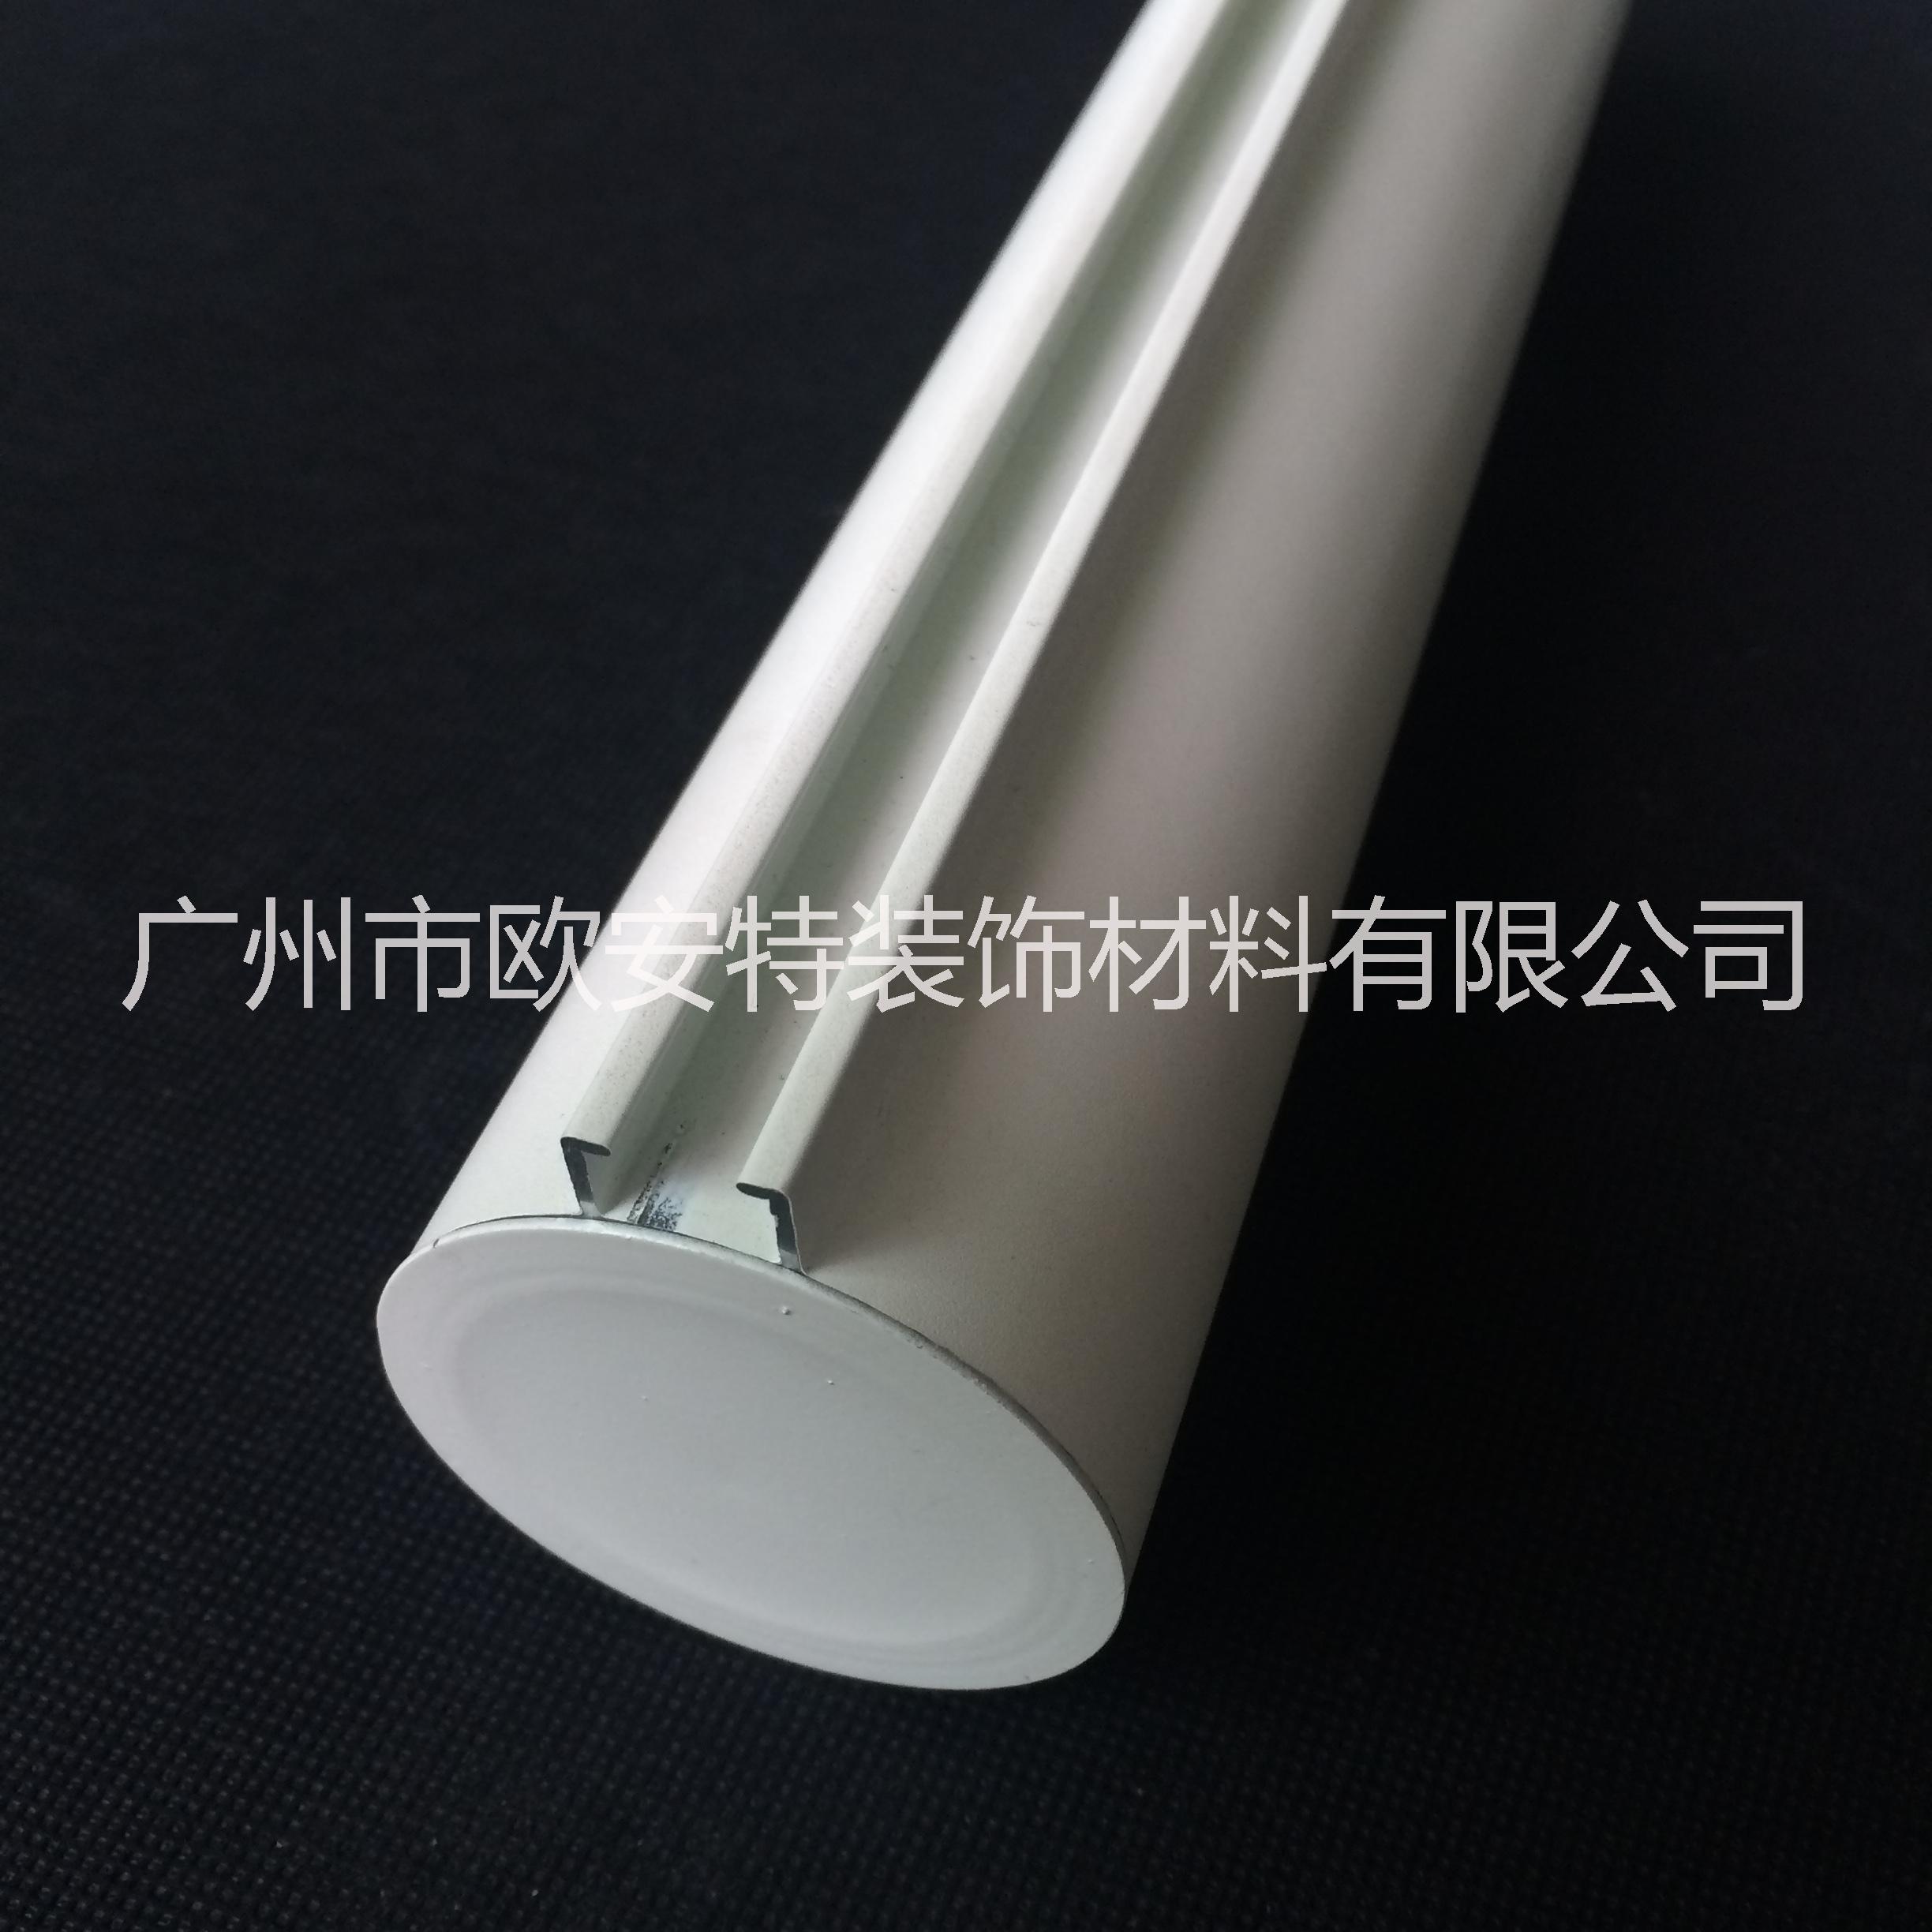 型材铝方通 铝圆管 铝型材铝圆管天花 铝圆管生产厂